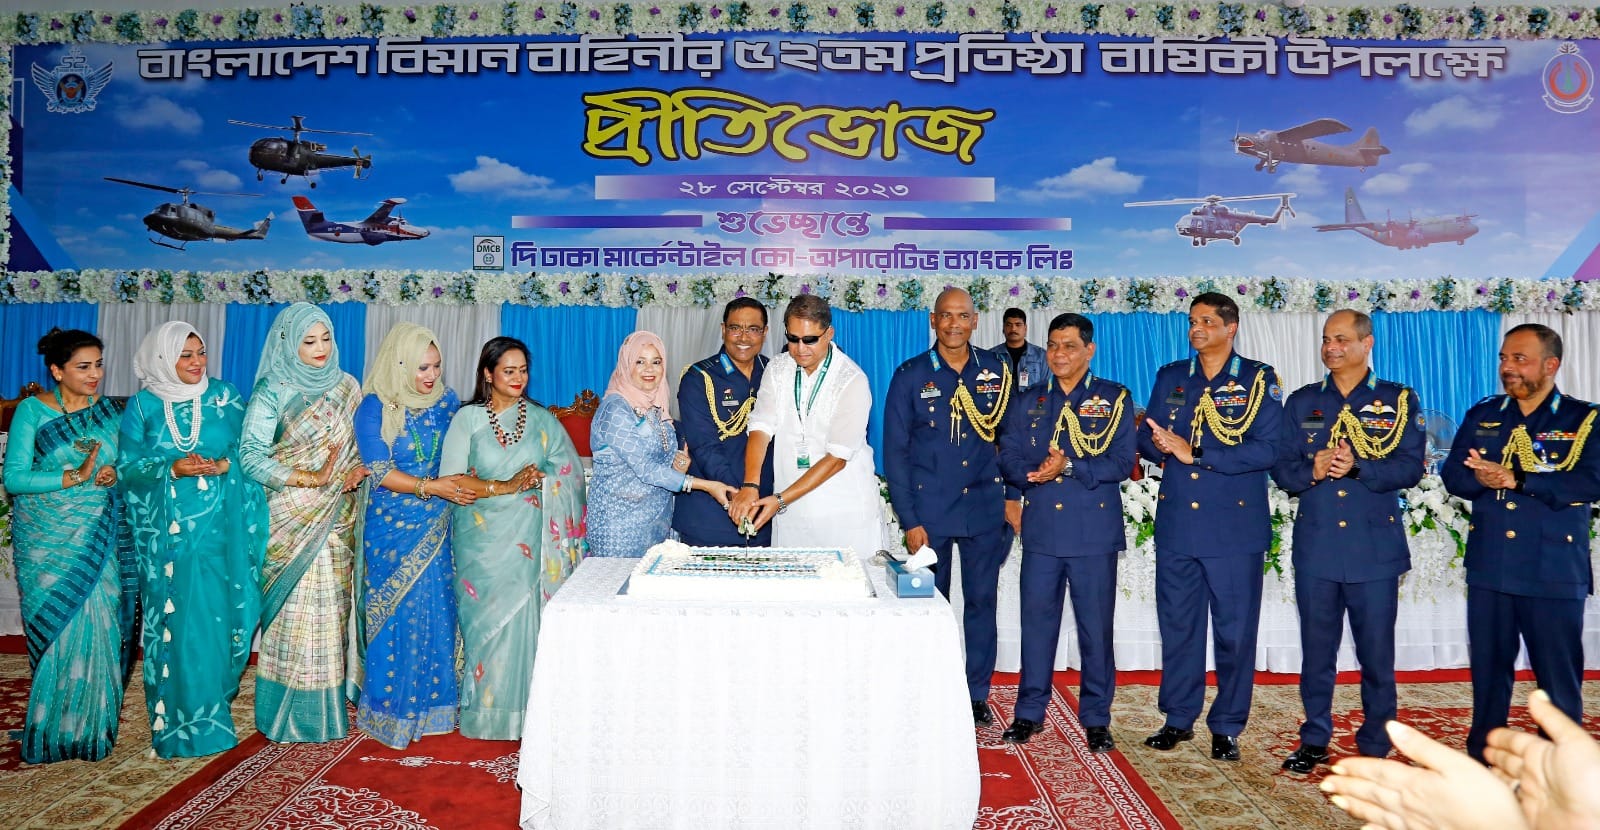 বাংলাদেশ বিমান বাহিনী প্রতিষ্ঠার ৫২ বছর পূর্তি উদযাপন